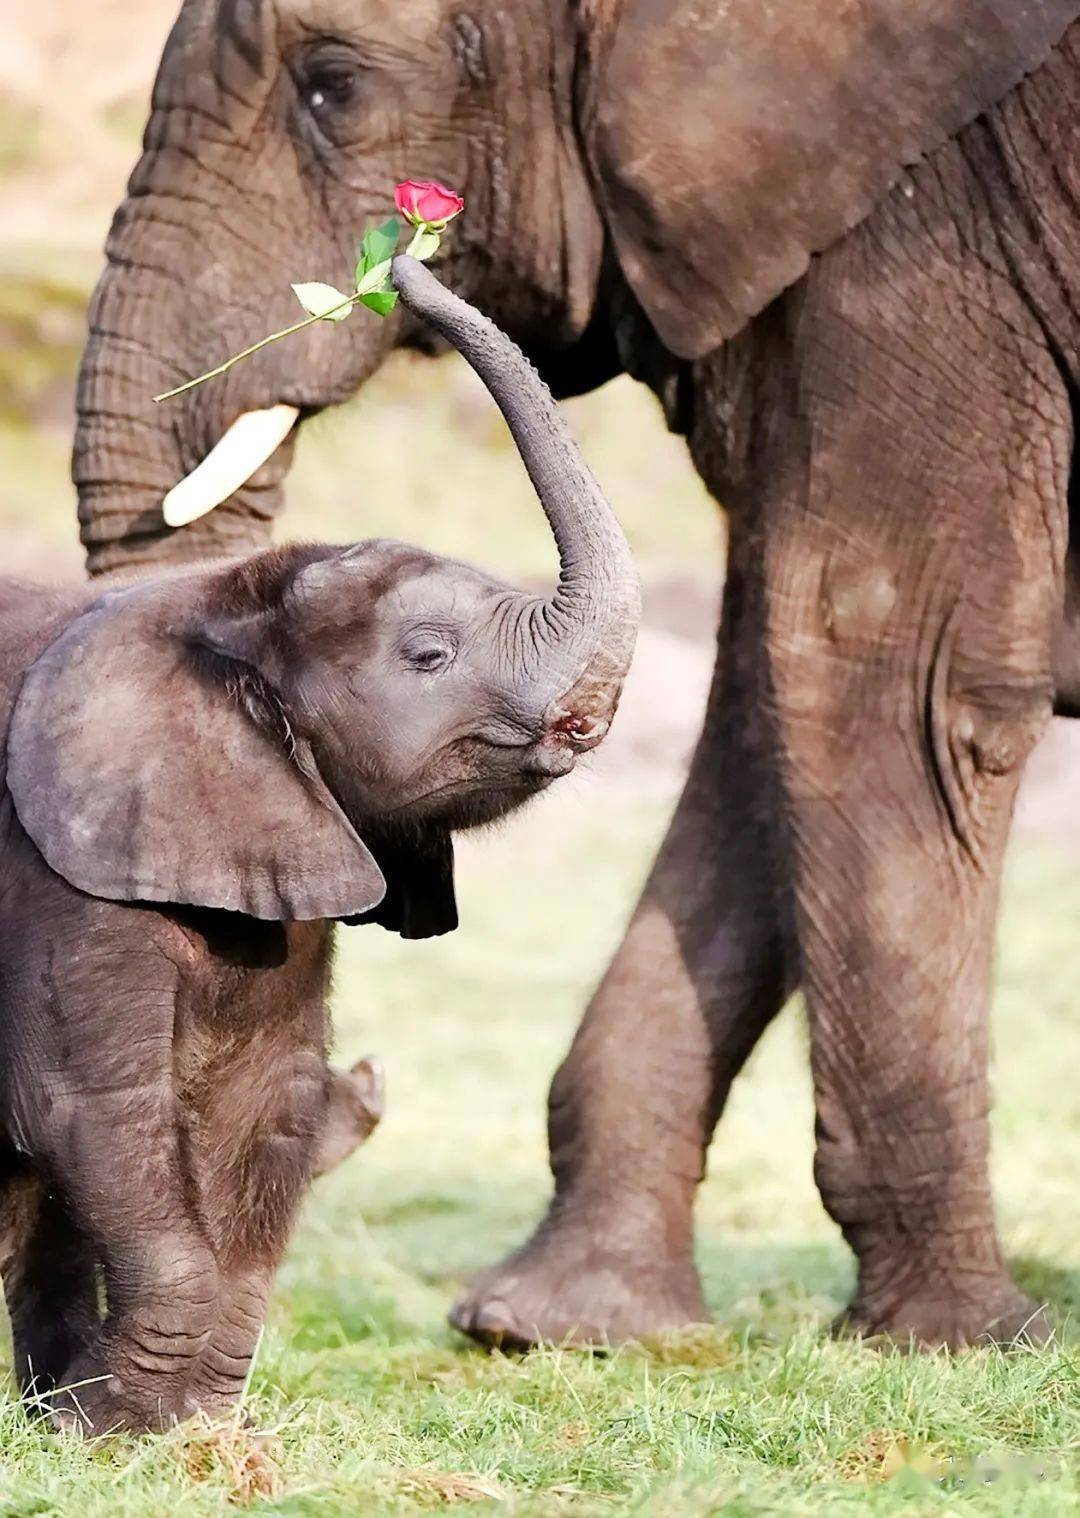 1 月 11 日,肯尼亚,英国野生动物摄影师保罗·戈尔茨坦的大象摄影作品